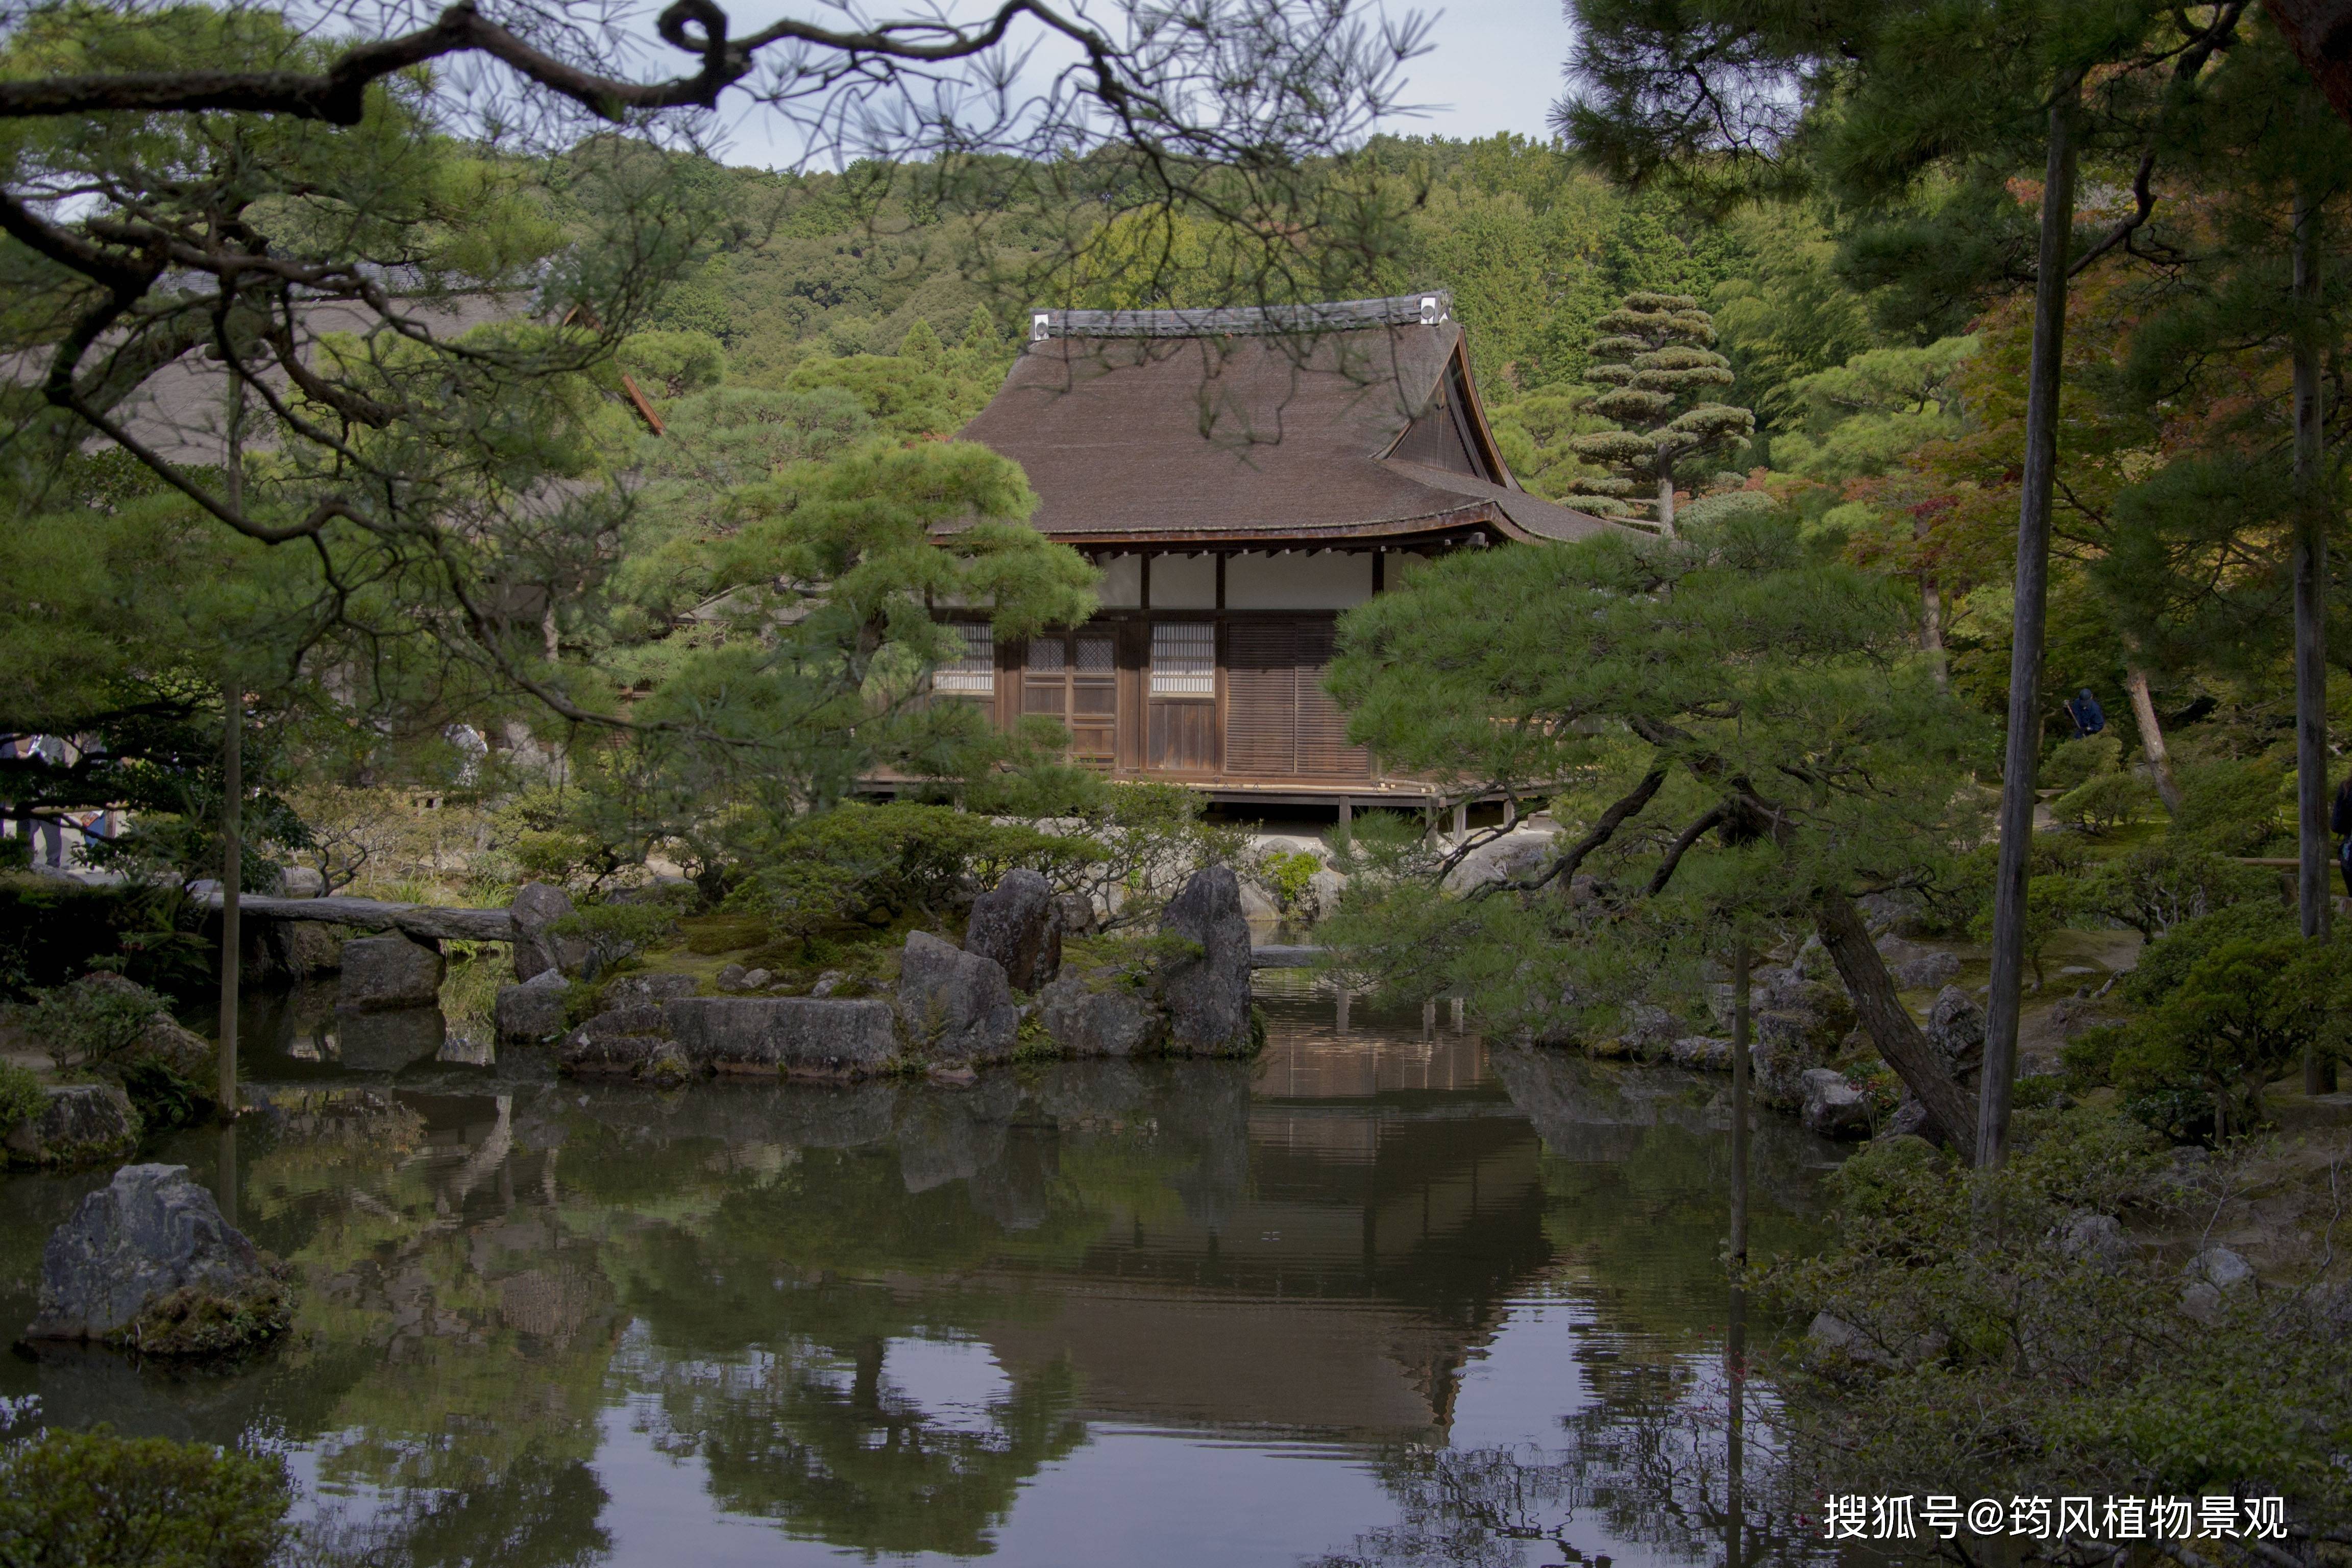 一块山石的亲身讲述:带你跨越千年,见证日本庭院的诞生与演变